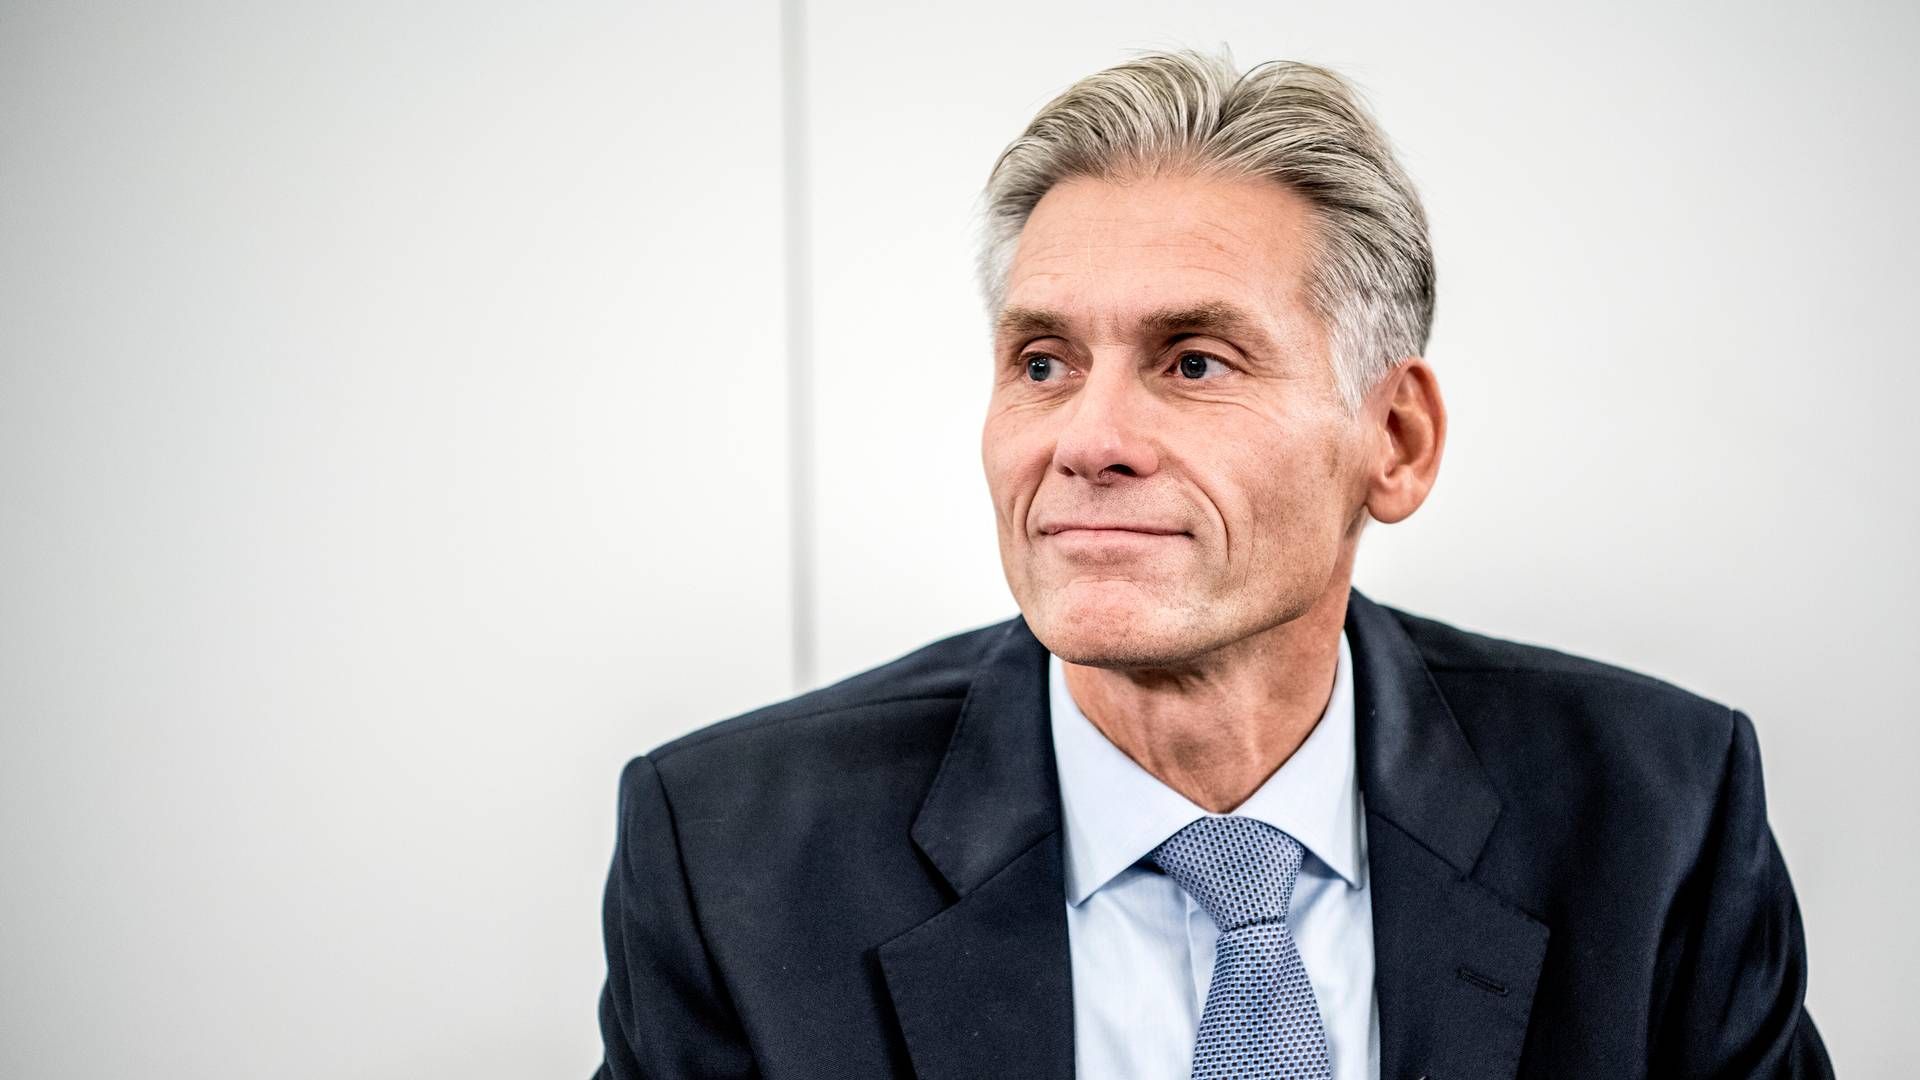 Thomas F. Borgen var topchef i Danske Bank fra 2013 til 2018, inden en meget omtalt hvidvasksag tvang ham til at gå af. | Foto: Stine Bidstrup/Ritzau/Ritzau Scanpix